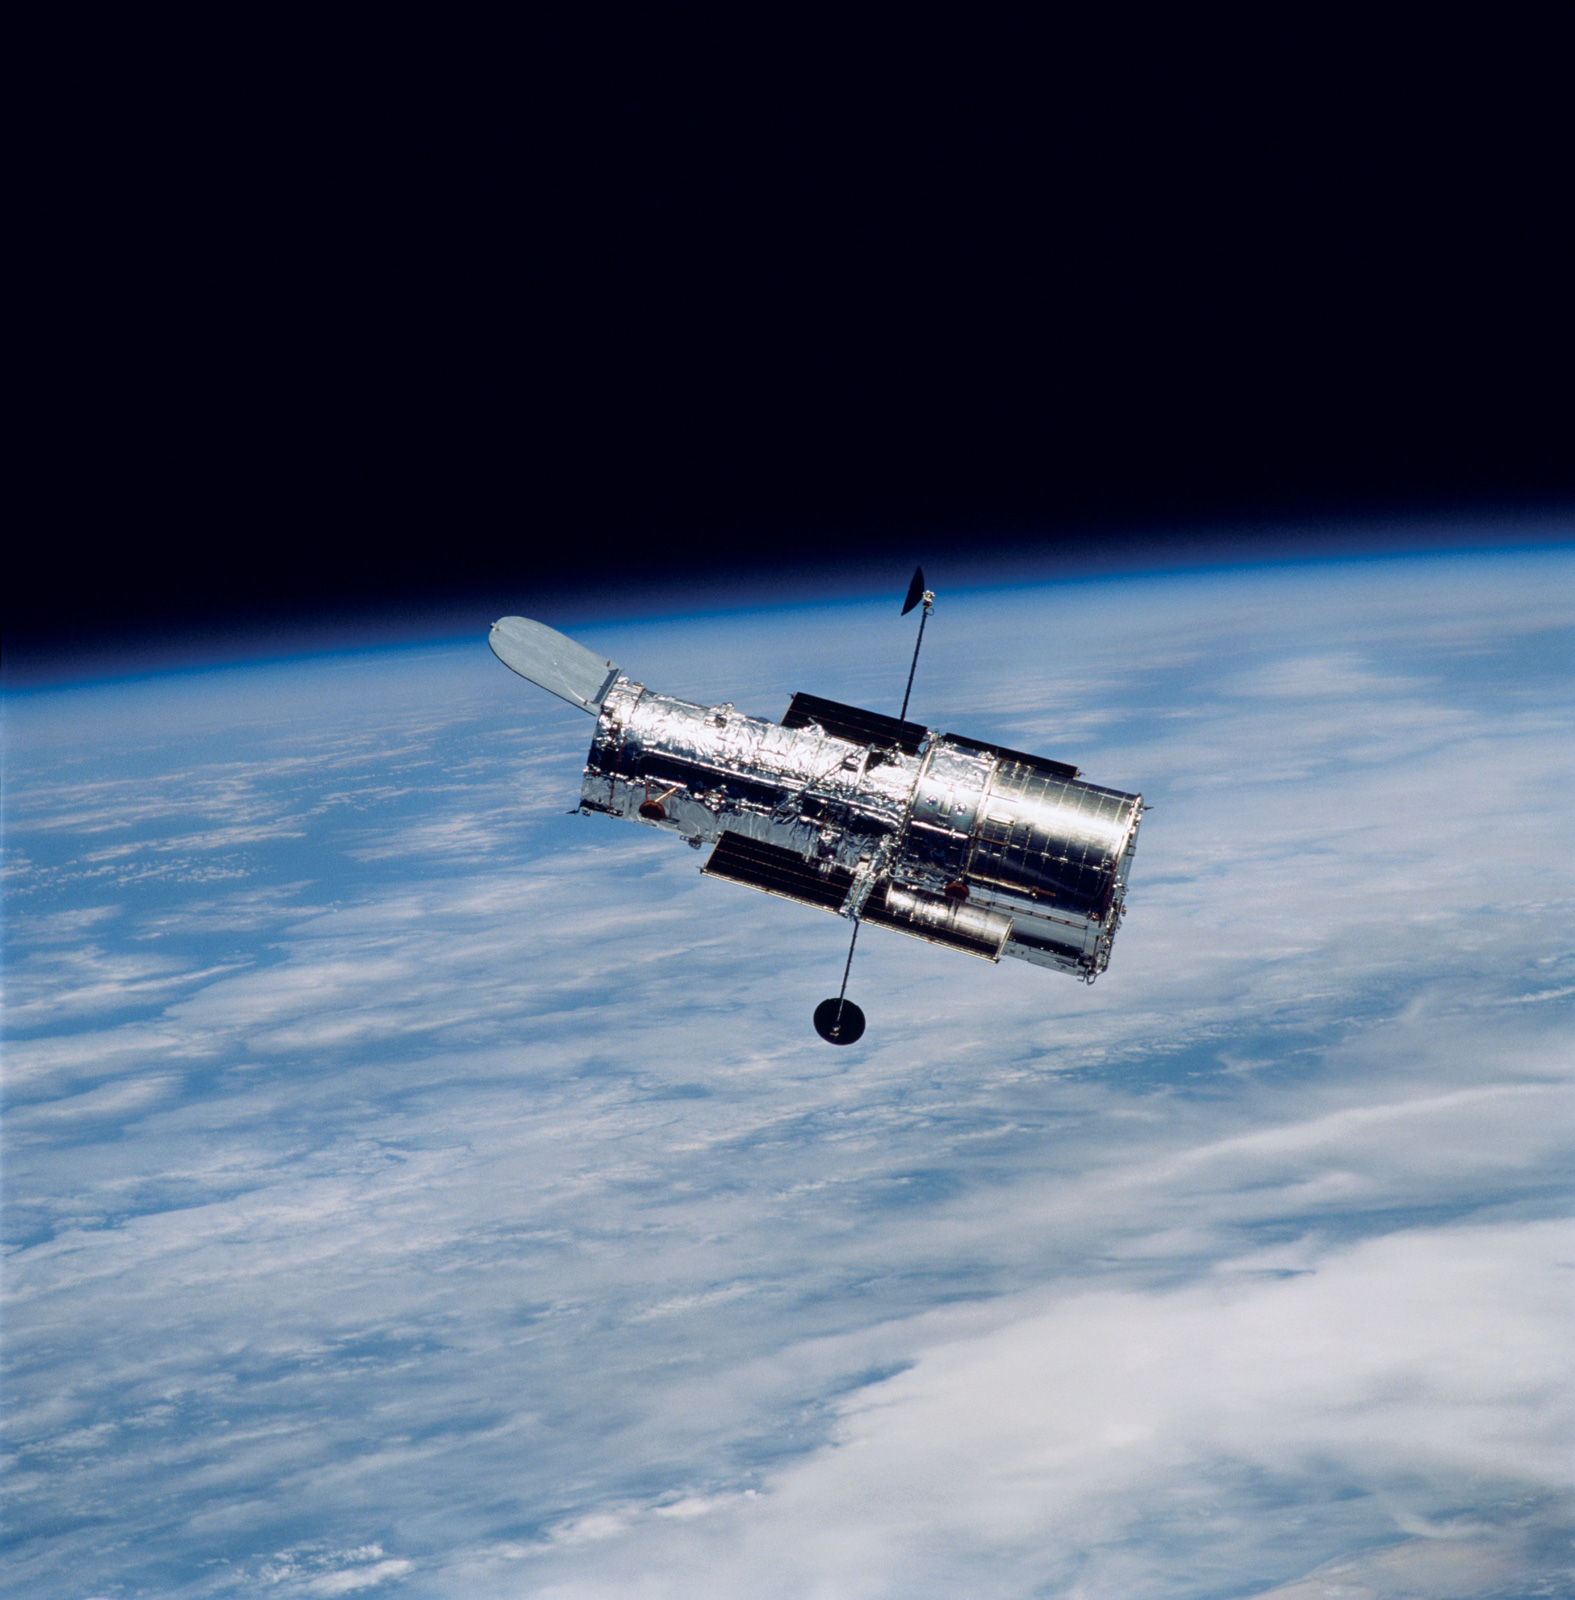 Telescopio espacial Hubble, 2002. Fotografía del STScI y la NASA